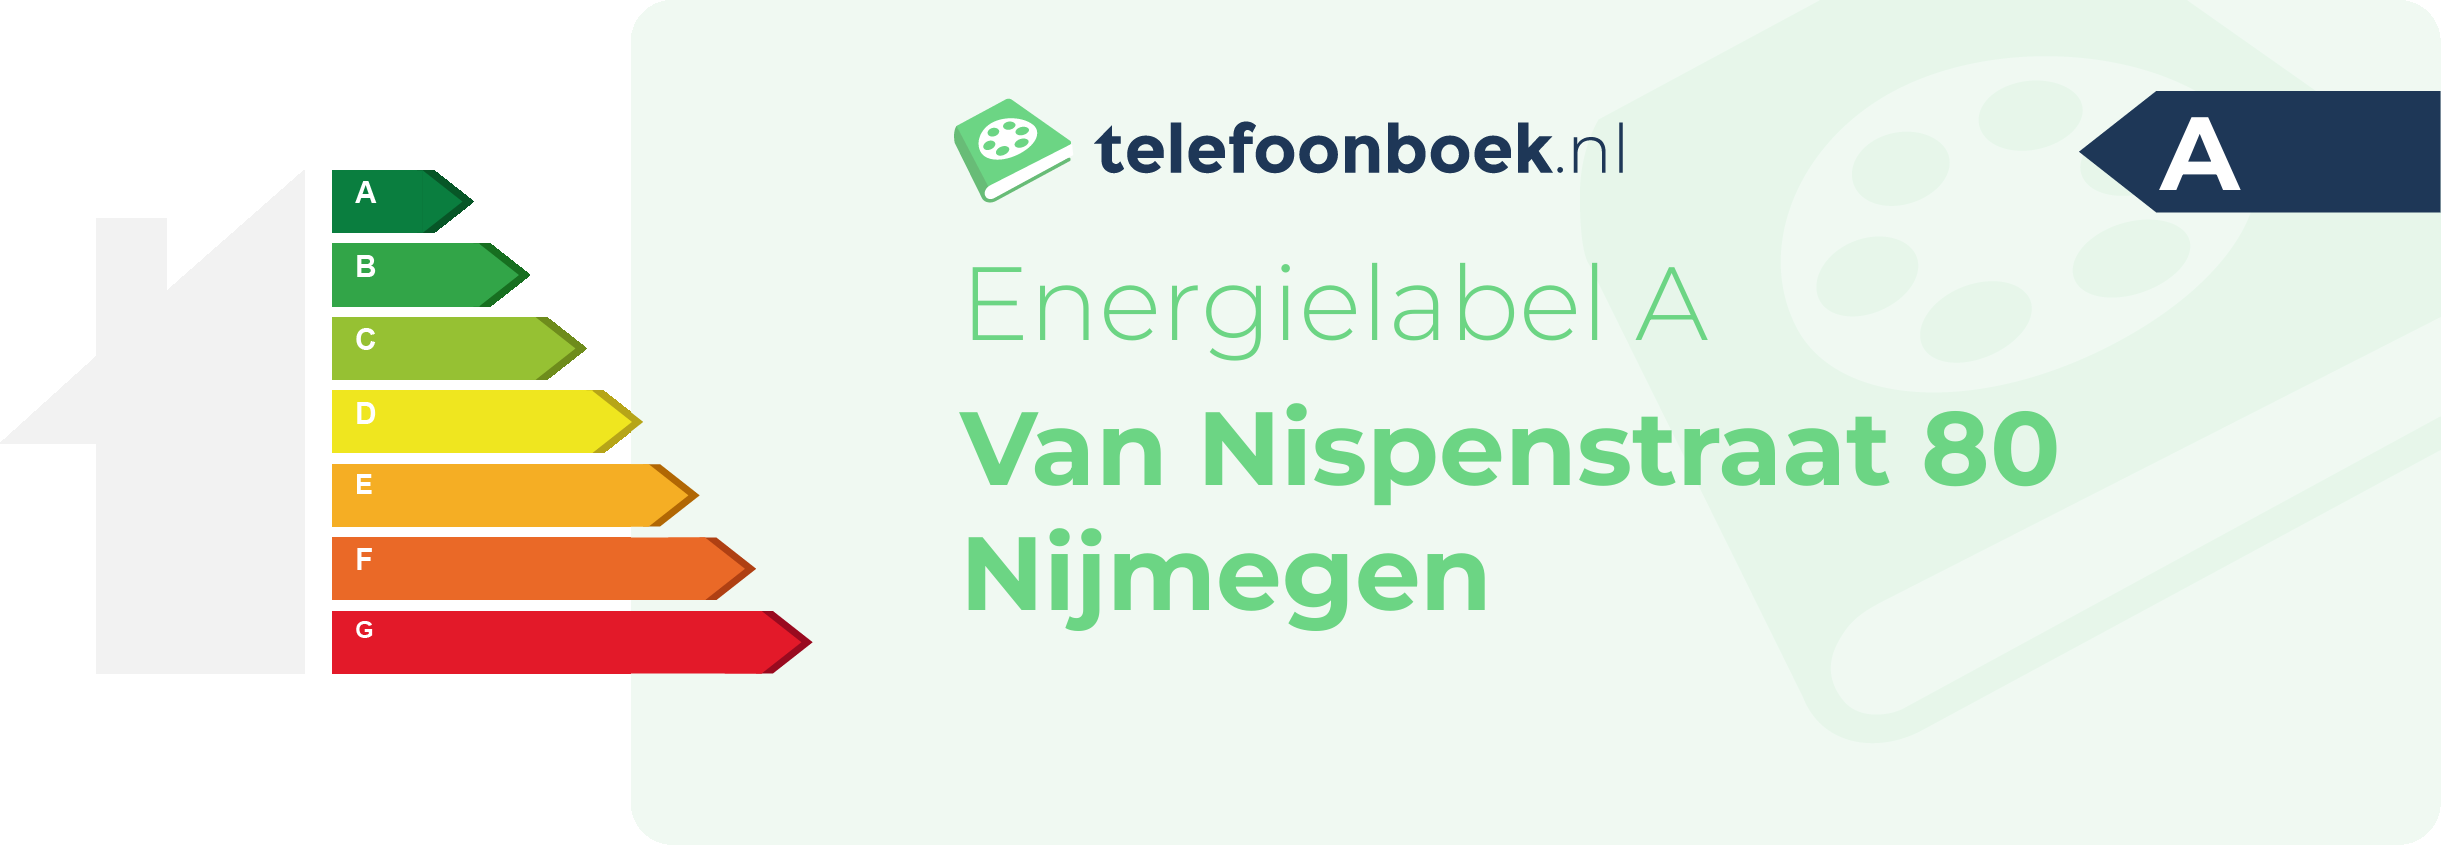 Energielabel Van Nispenstraat 80 Nijmegen